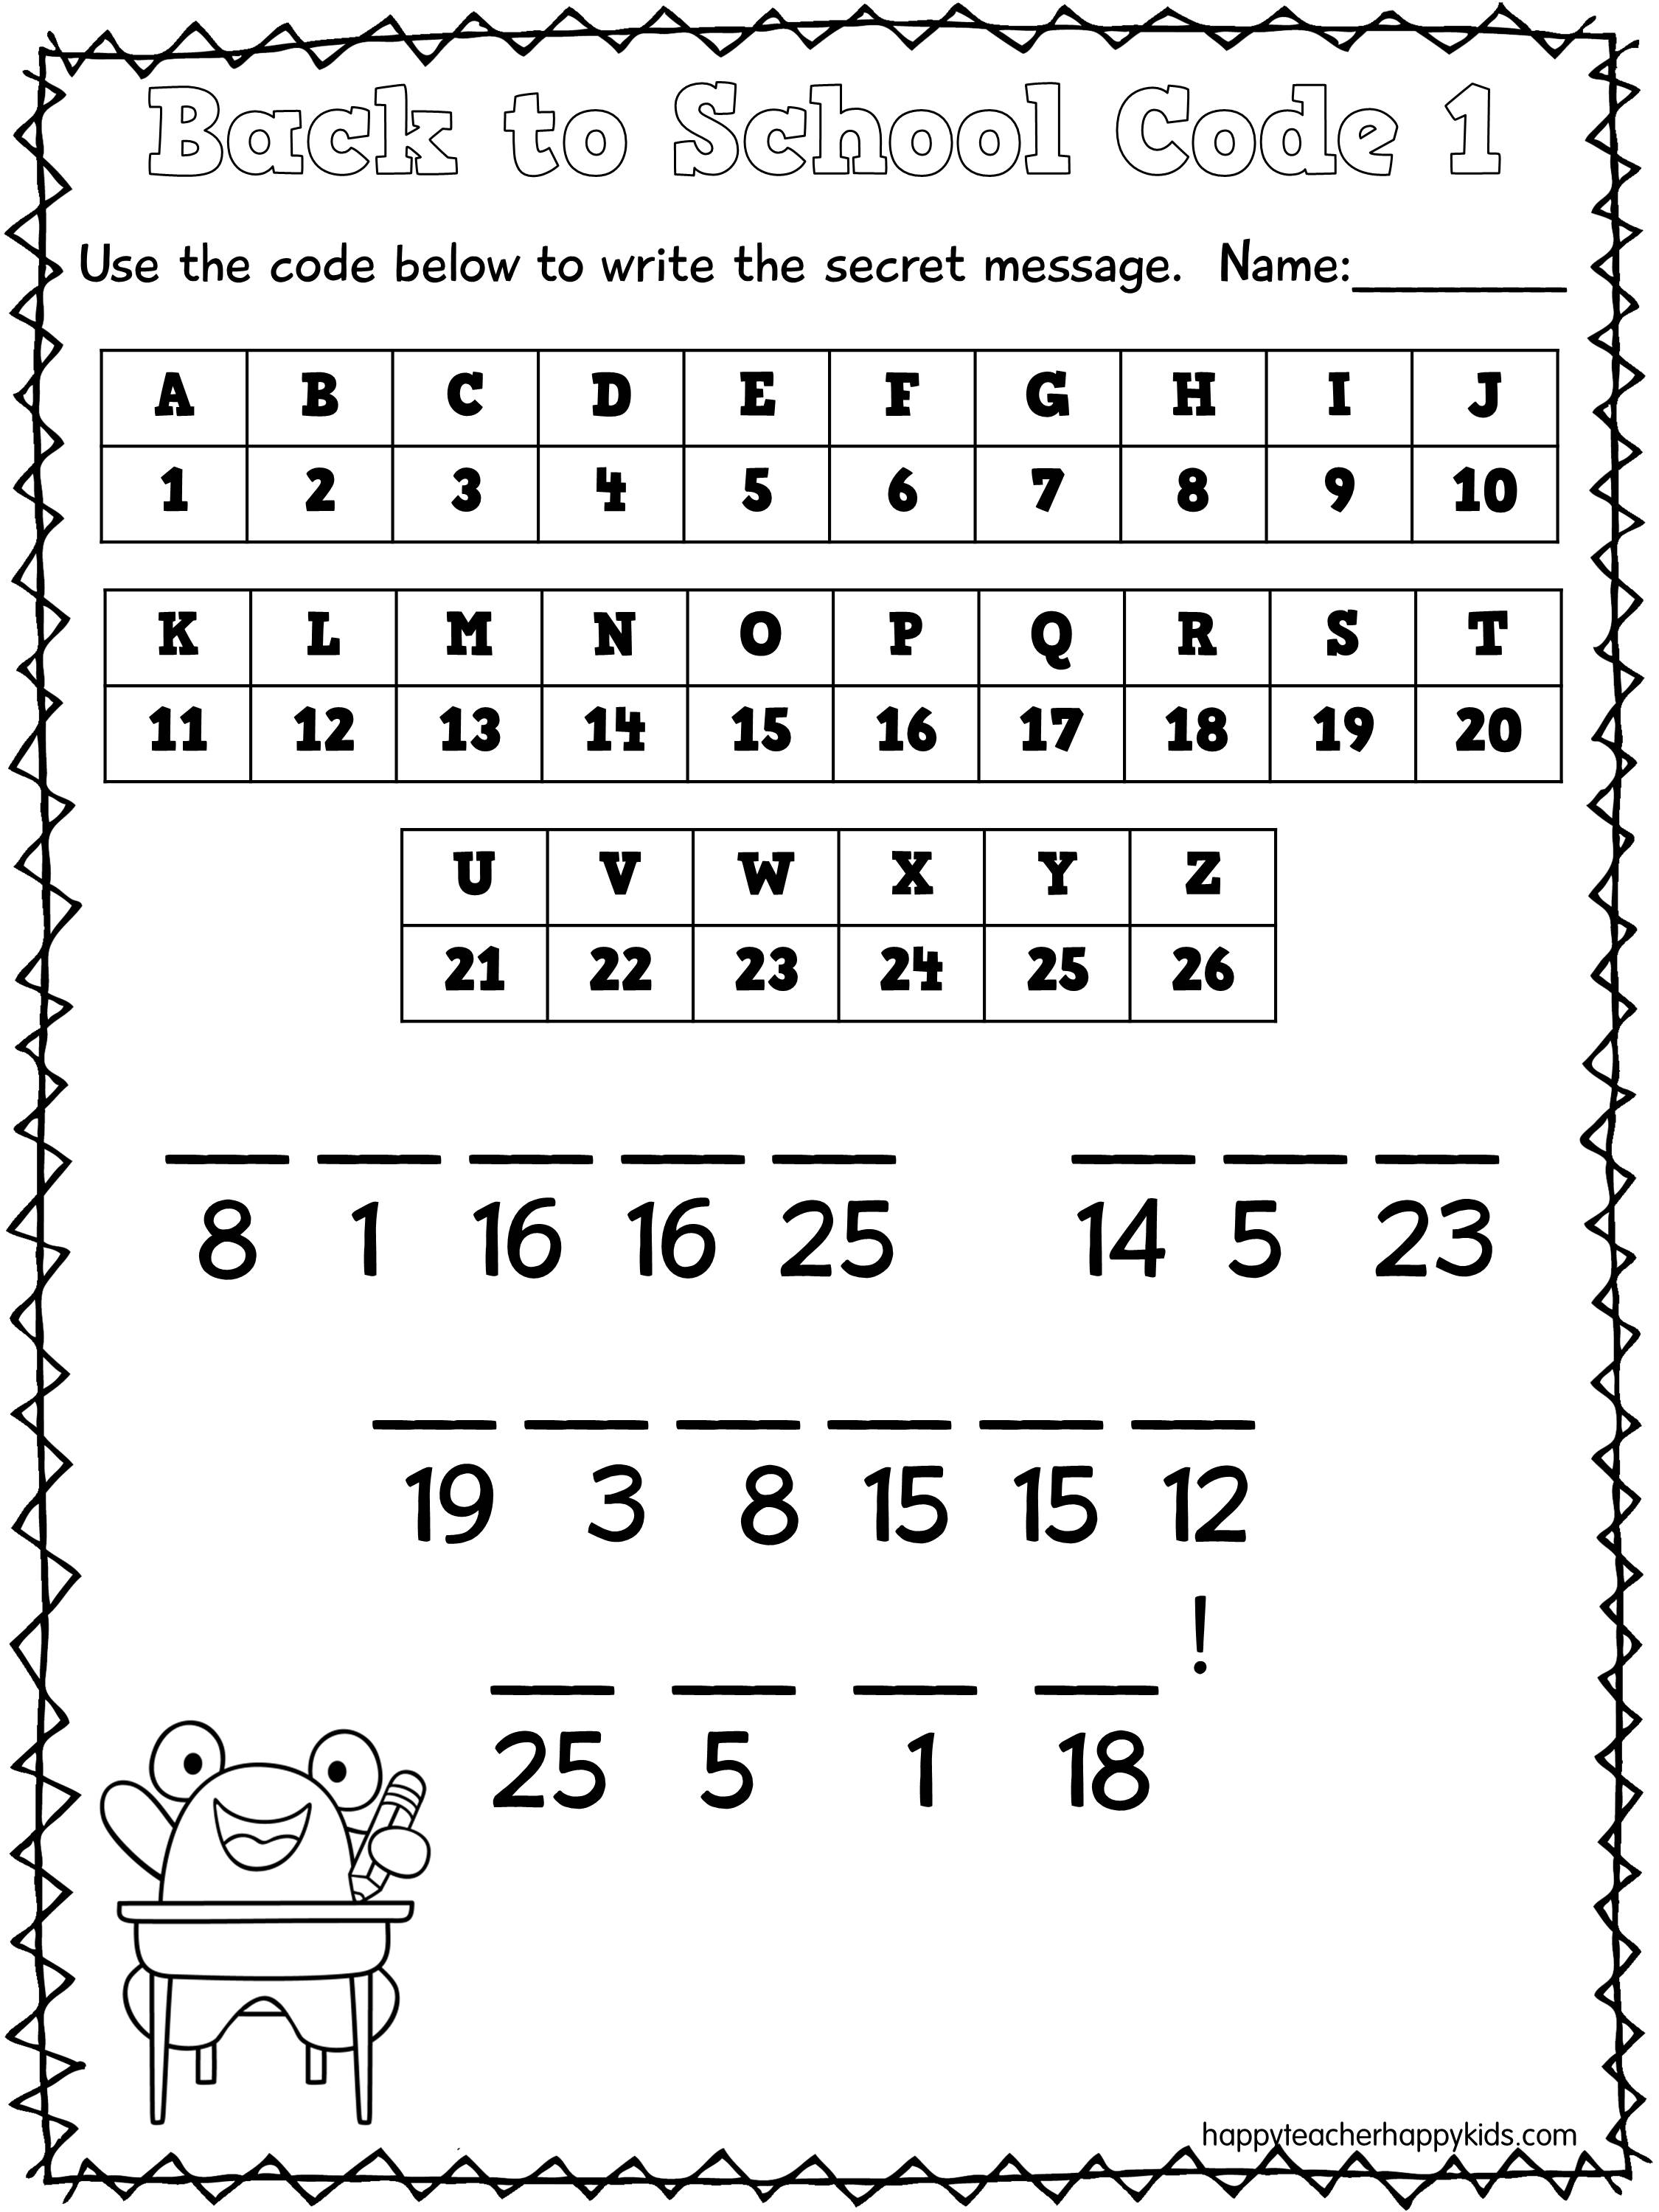 Free Printable Secret Code Worksheets Web Secret Code Printables For Kids 